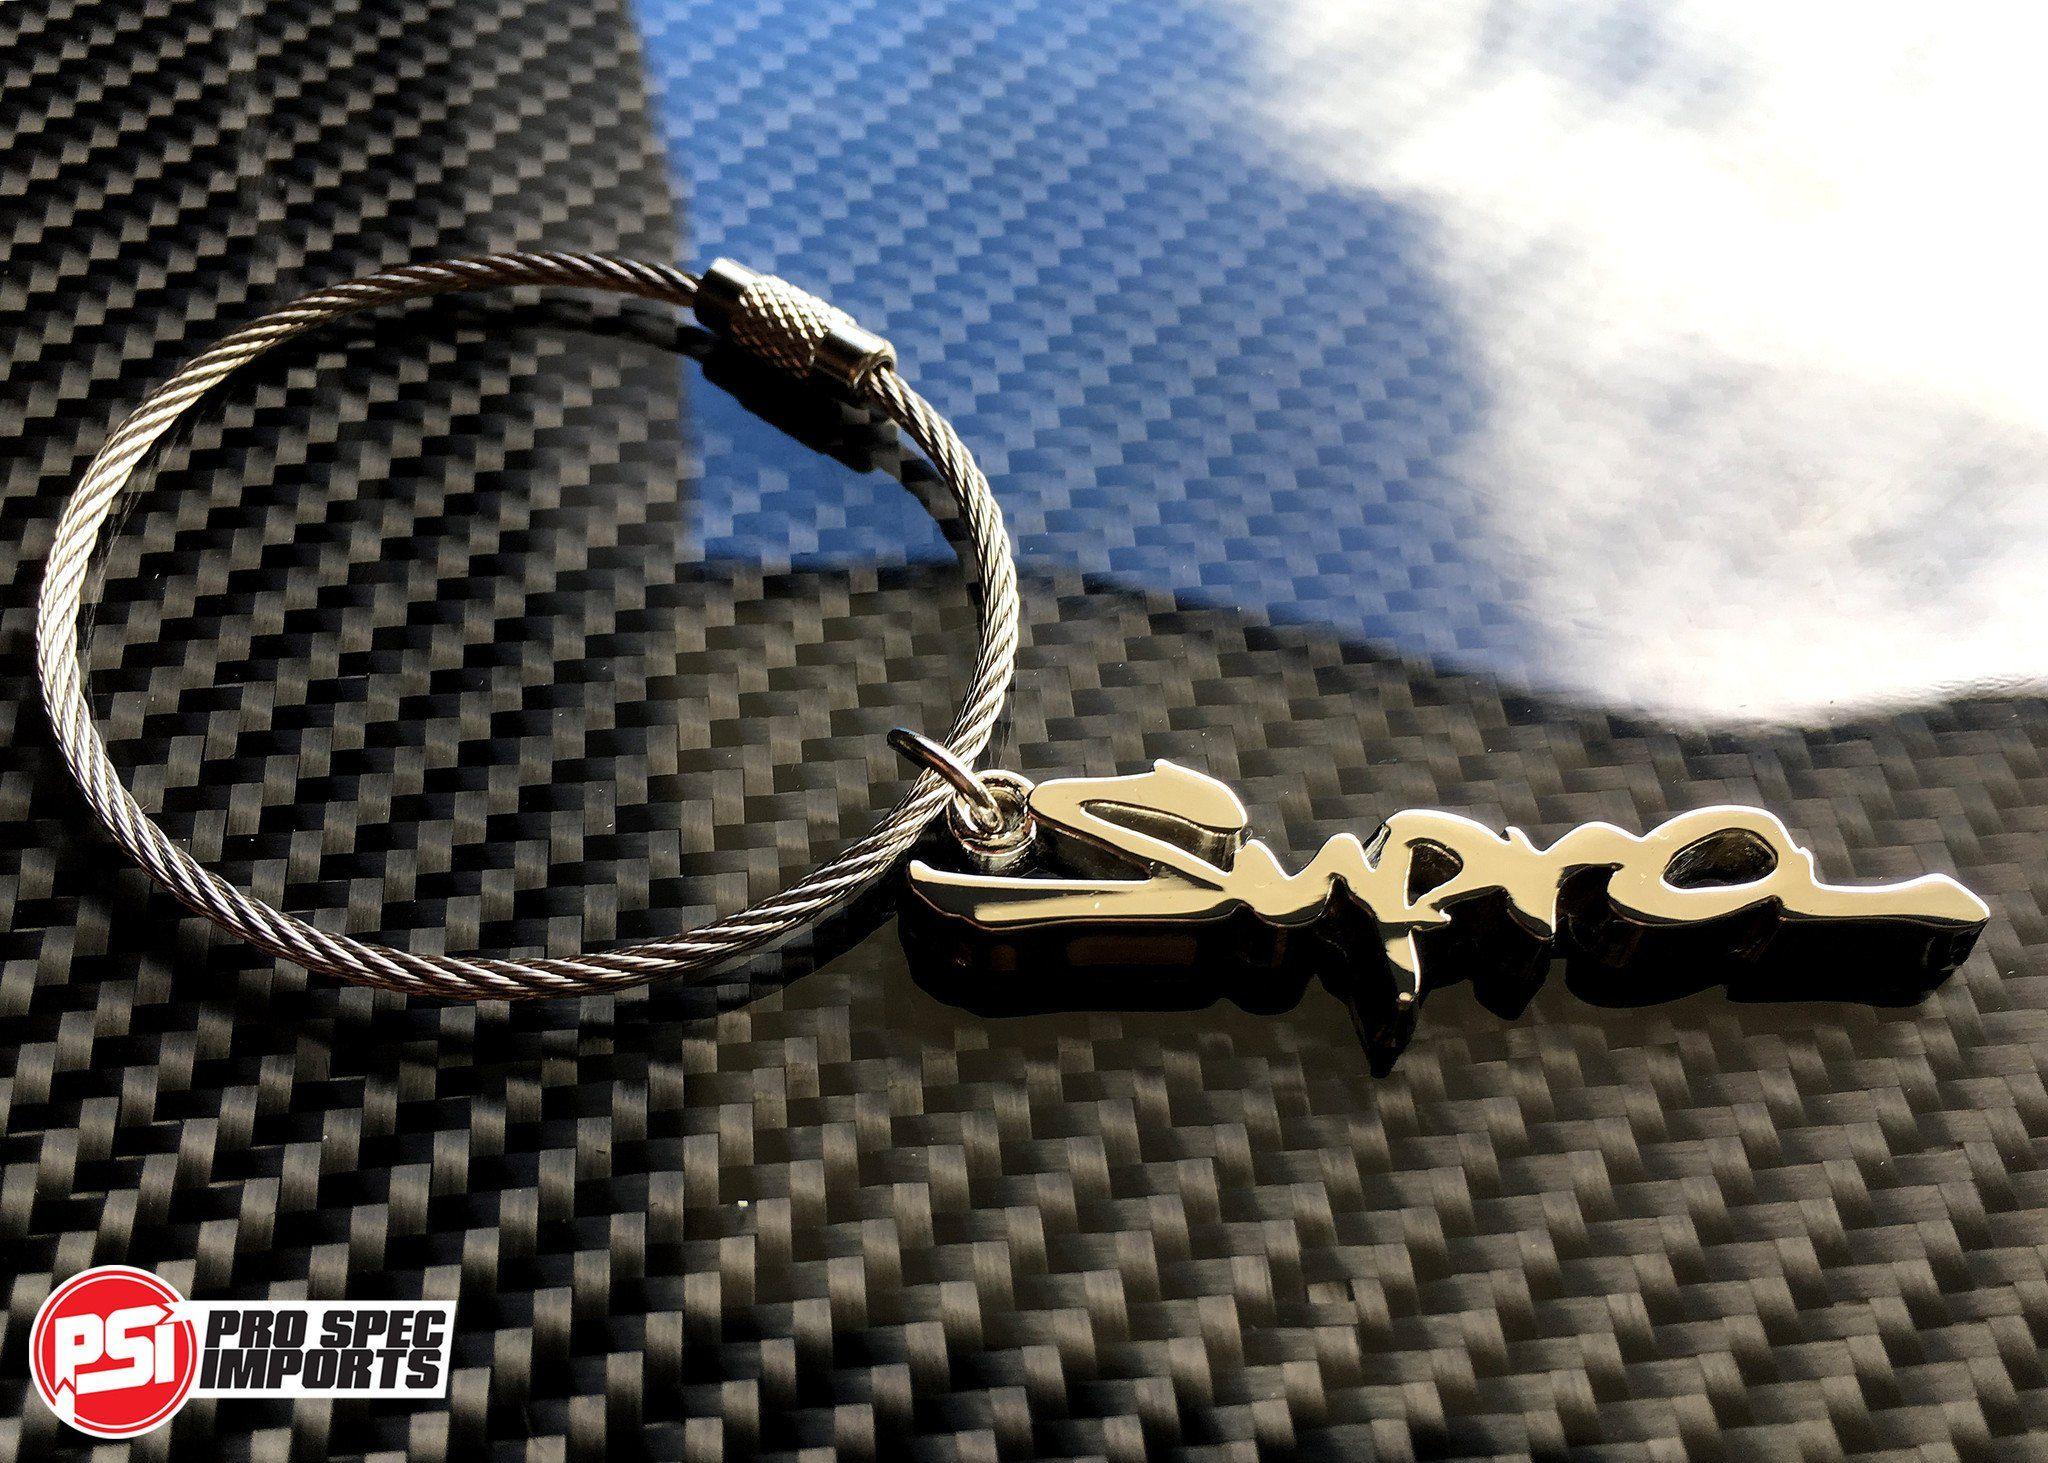 Supra Sniping Logo - Supra Key Ring MK4